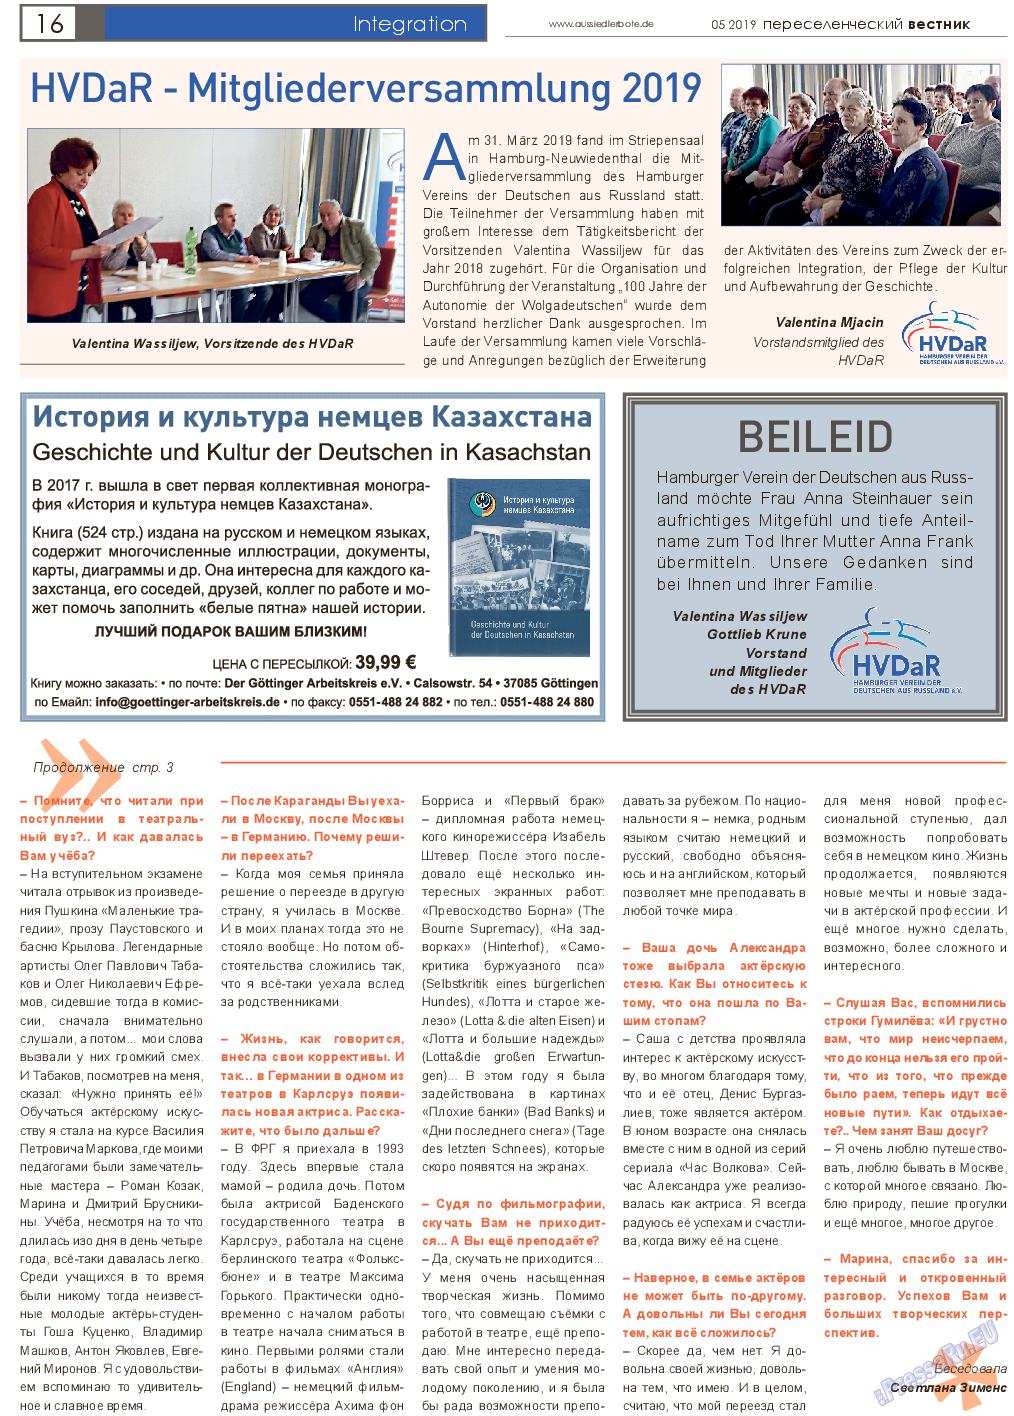 Переселенческий вестник, газета. 2019 №5 стр.16